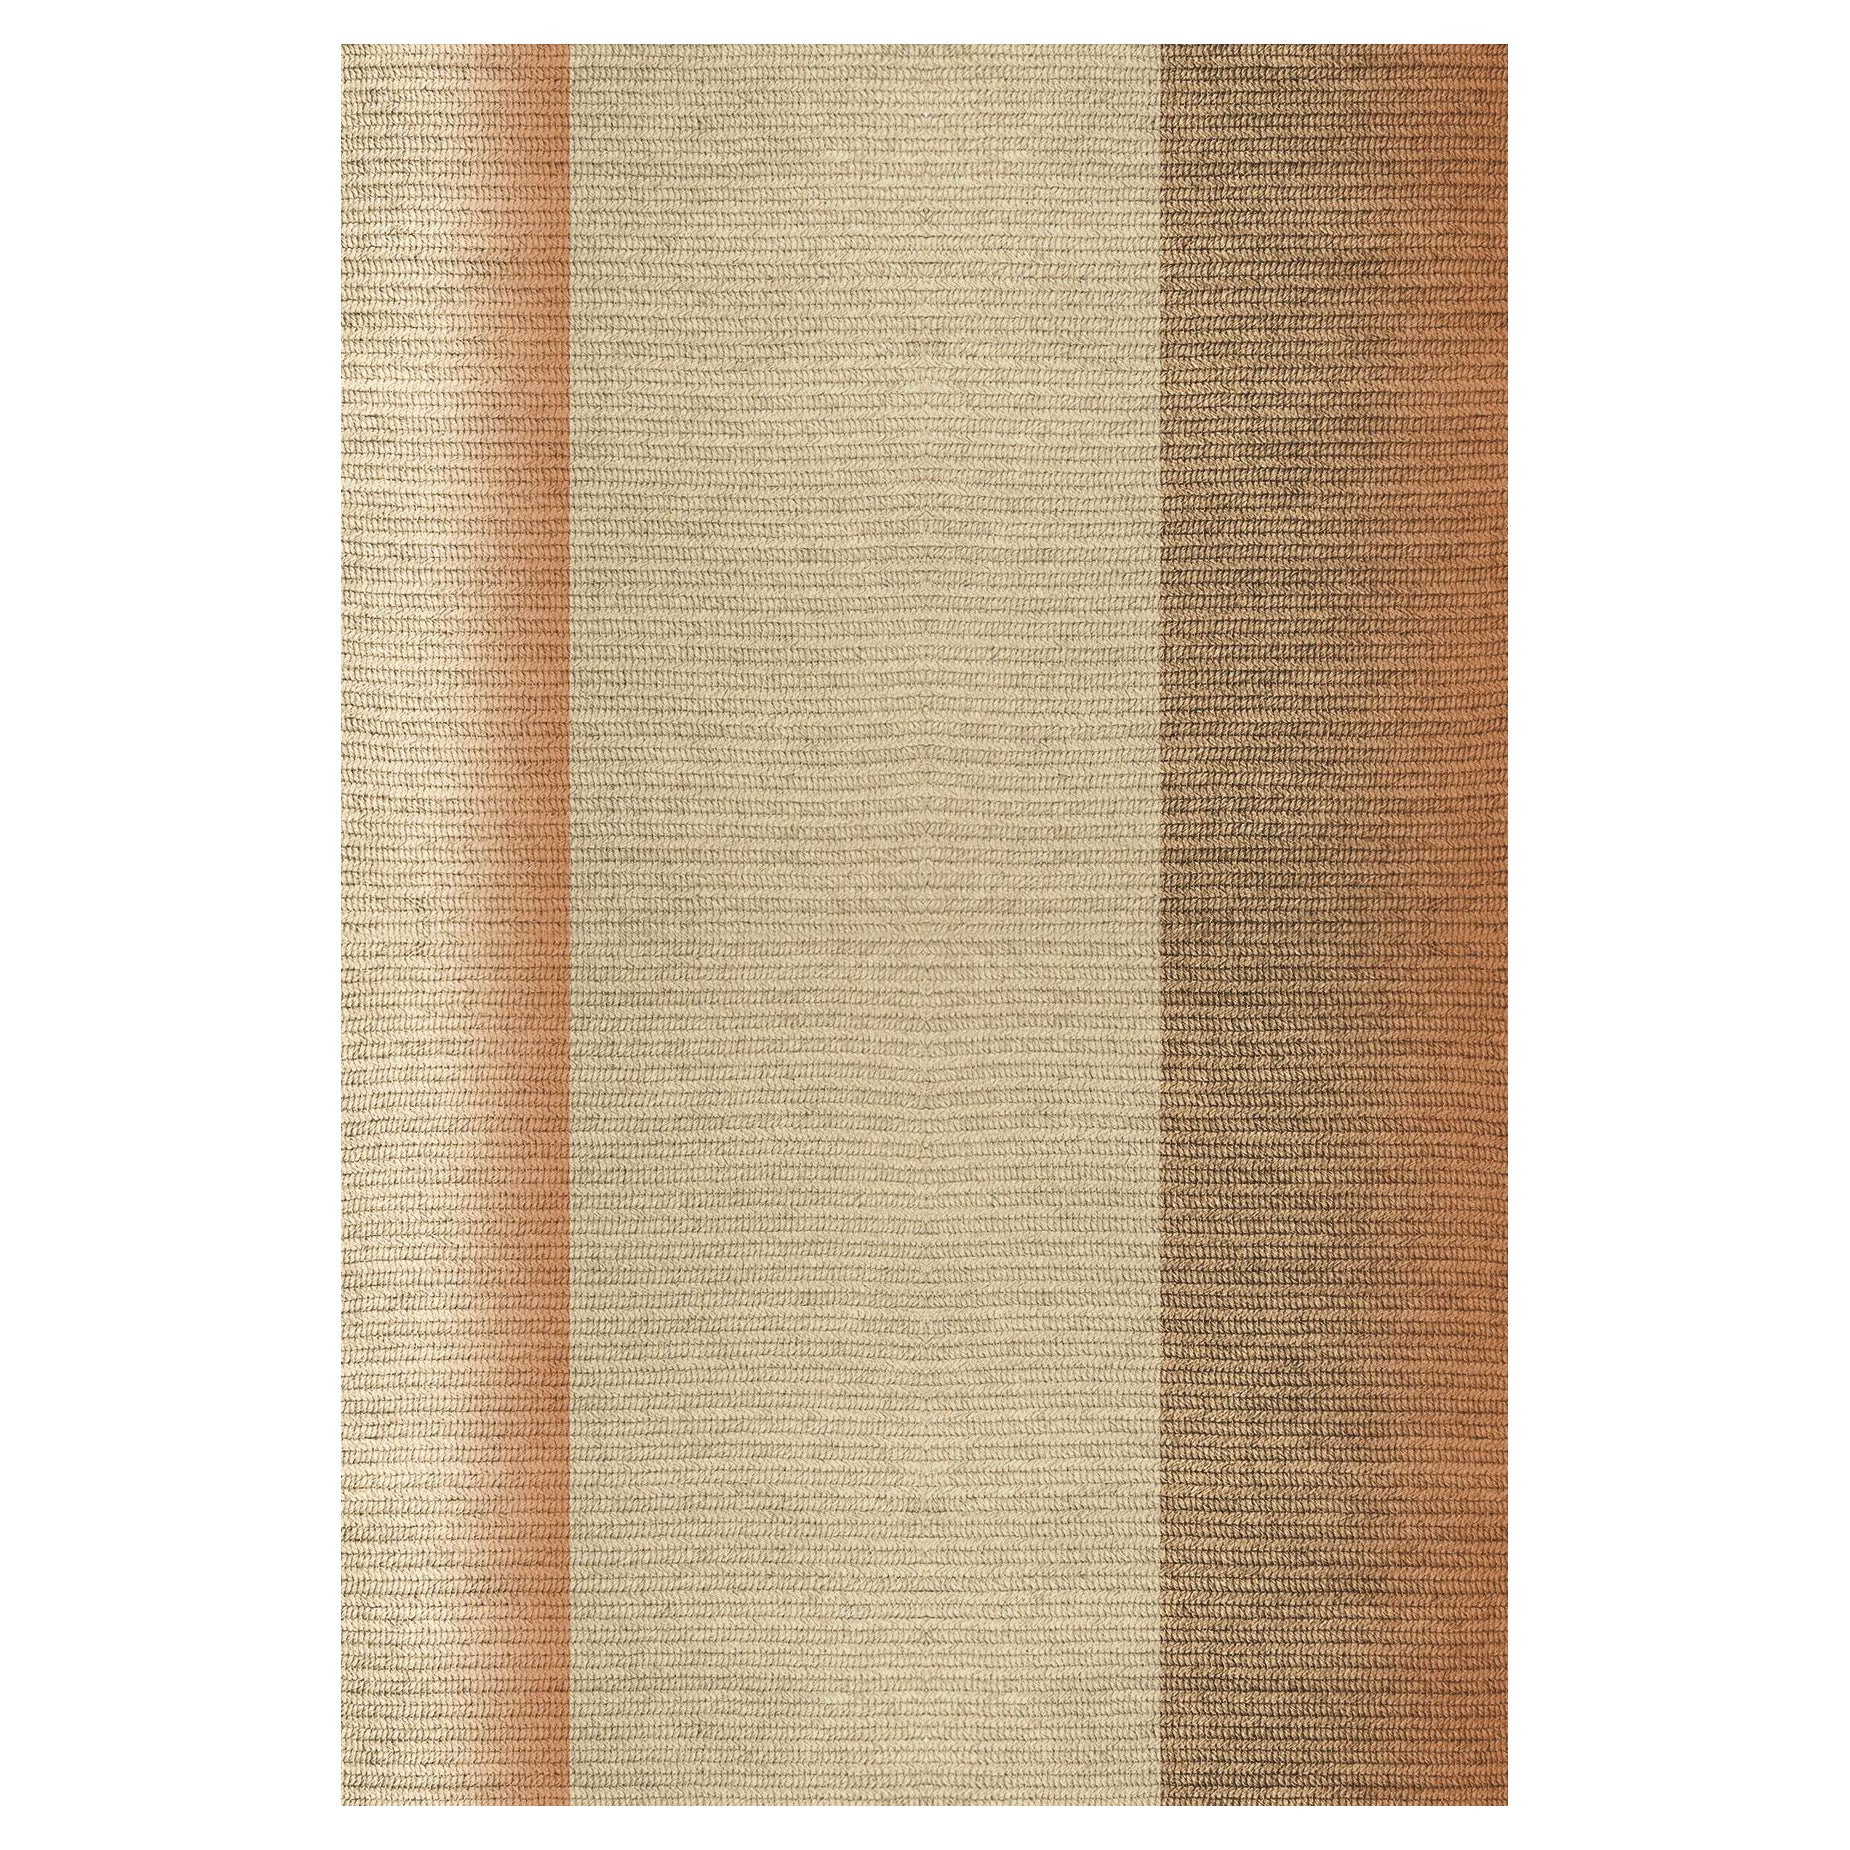 Tapis "Blur" en Abaca, couleur "Mahogany", 260 x390 cm, par Claire Vos pour Musett Design